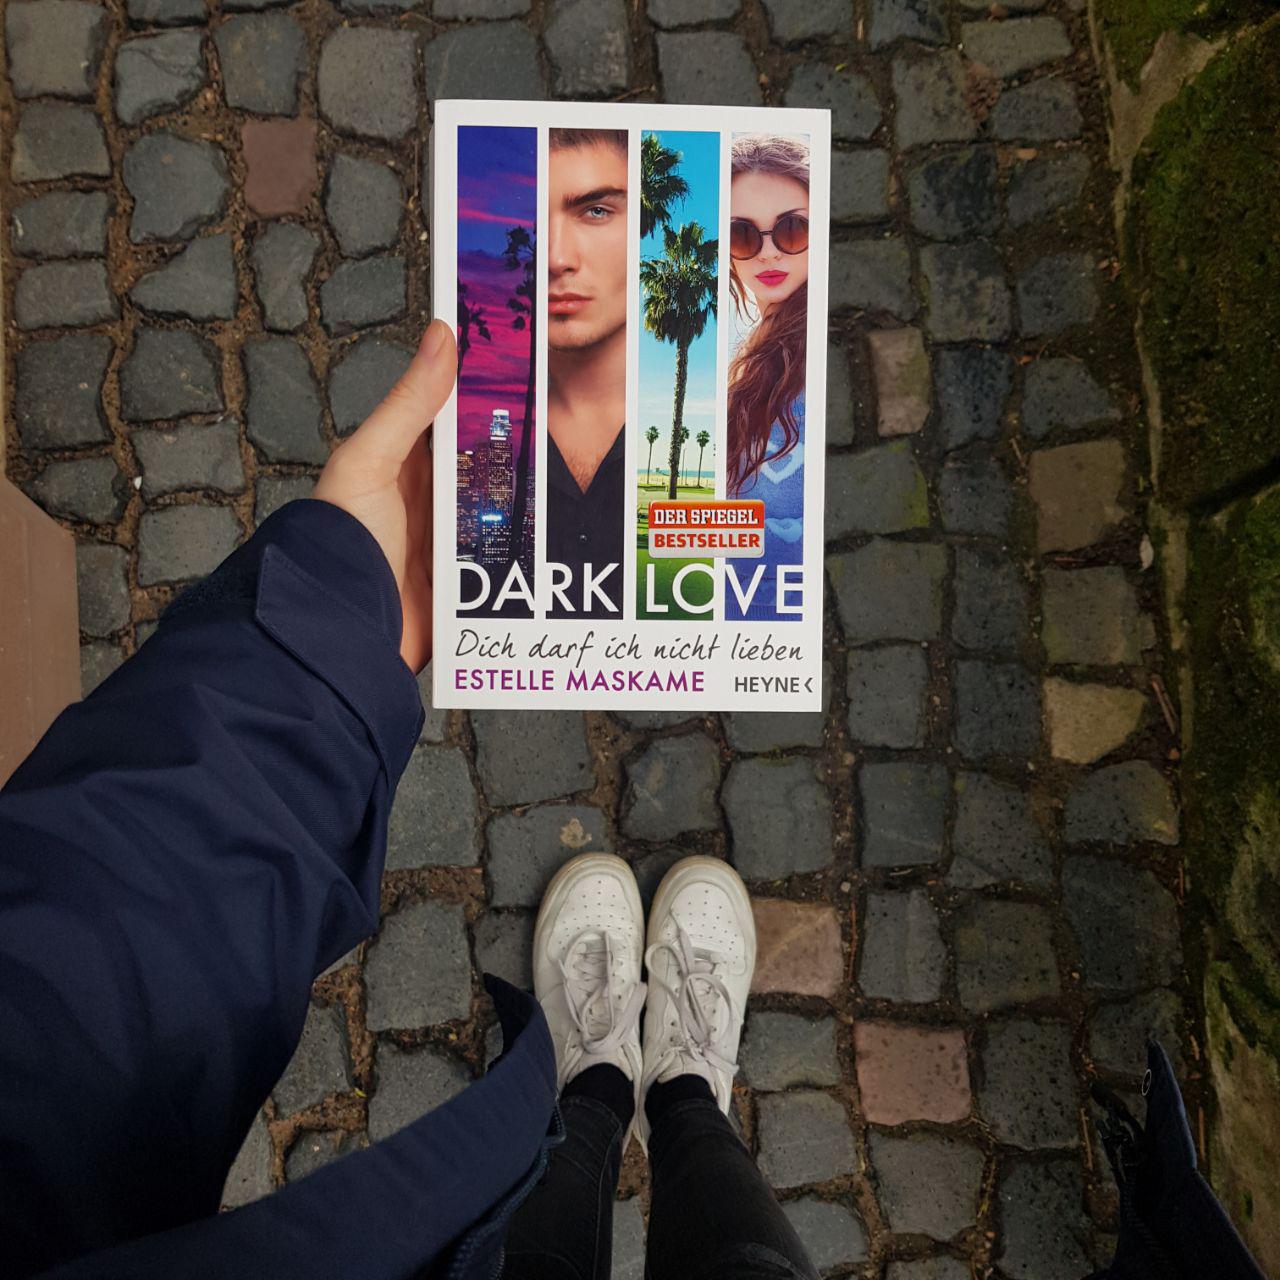 Foto: Eine Hand hält das Buch von Estelle Maskame "Dark Love". Im Hintergrund sieht man weiße Schuhe und den Gehweg.